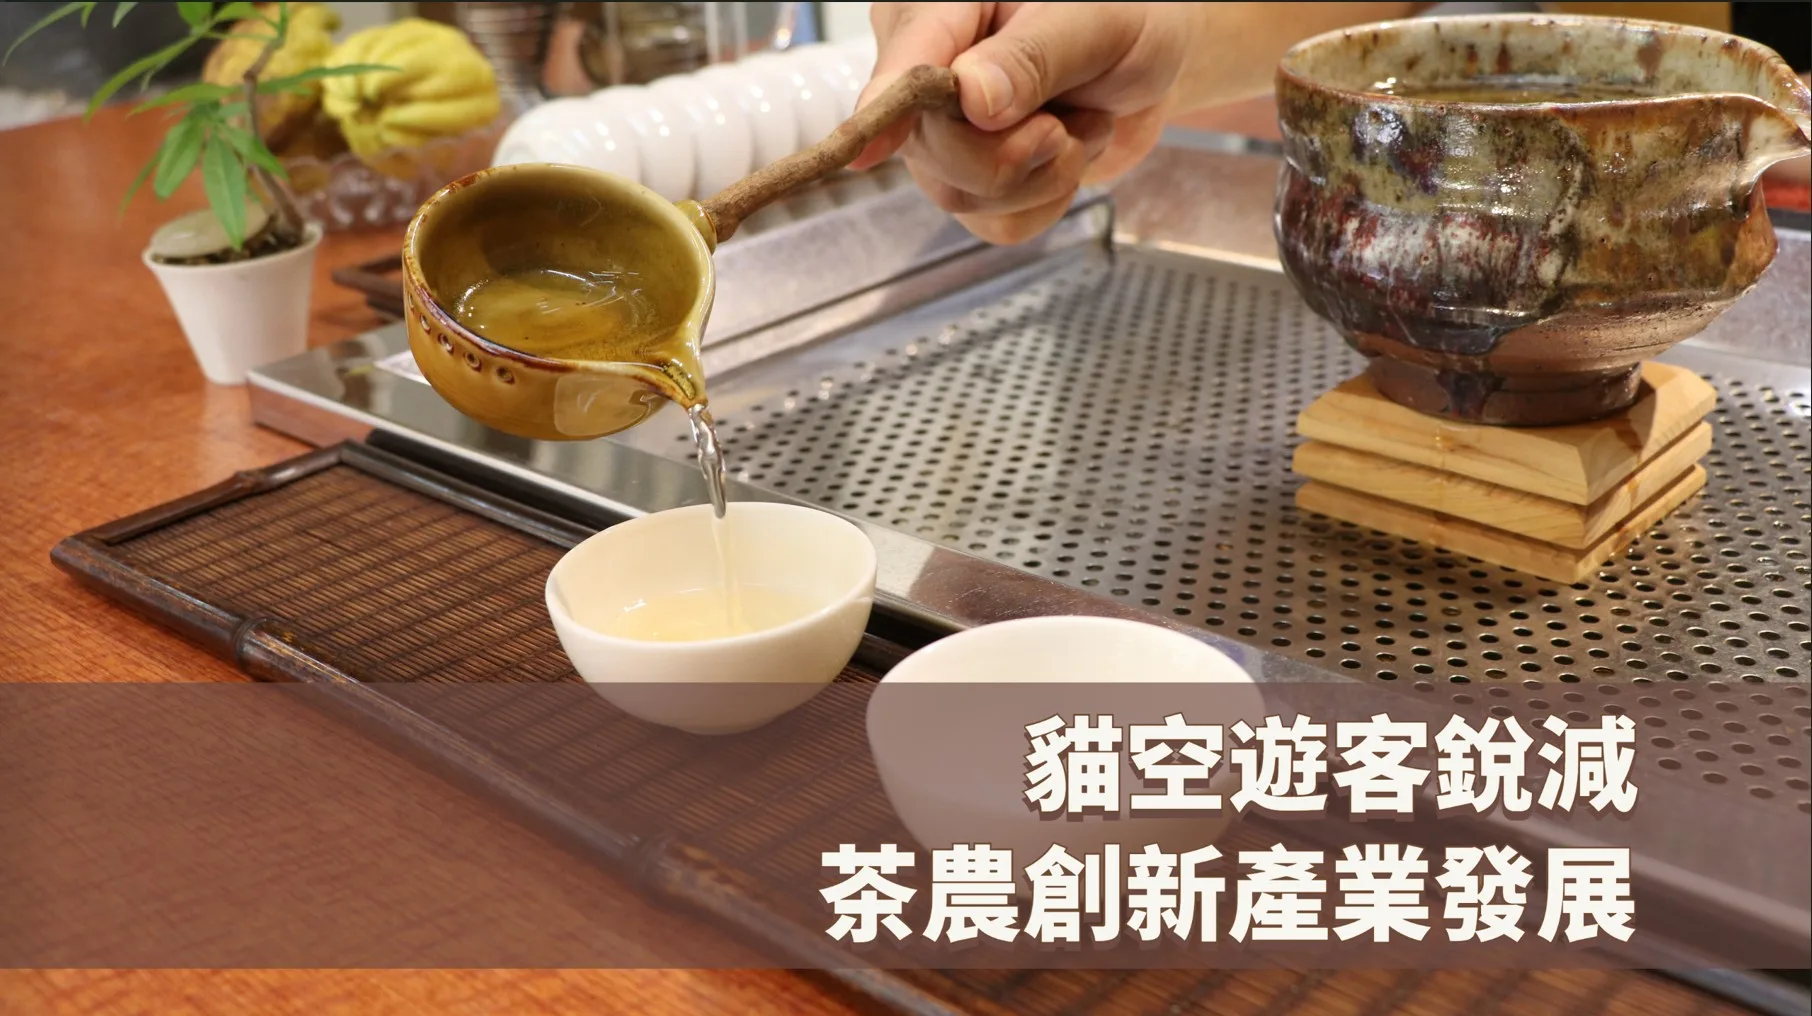 貓纜16年遊客銳減 茶農創新延續茶文化